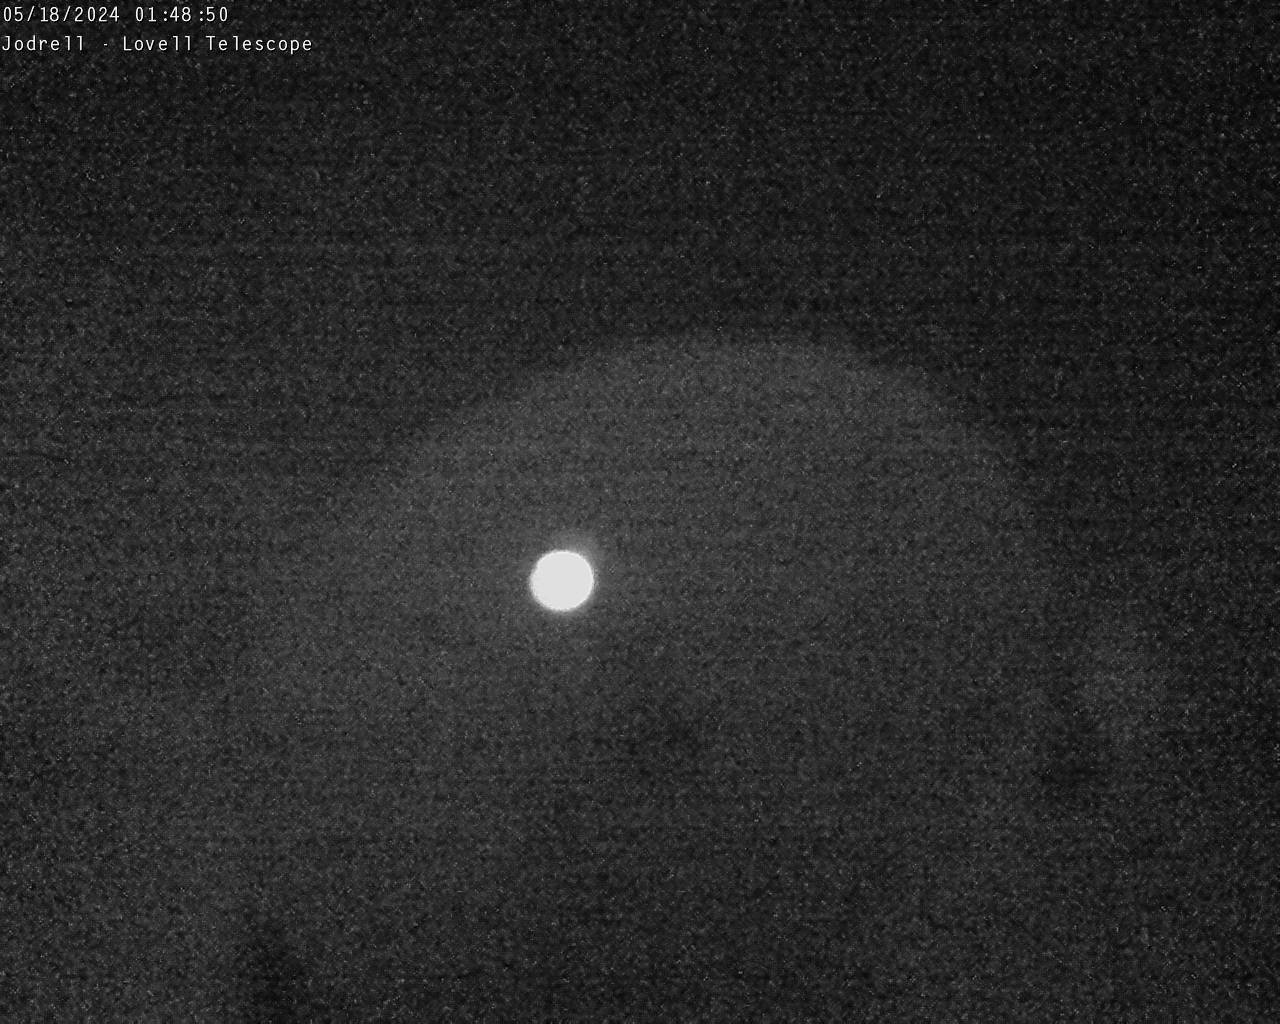 Observatorio Jodrell Bank Sáb. 01:49